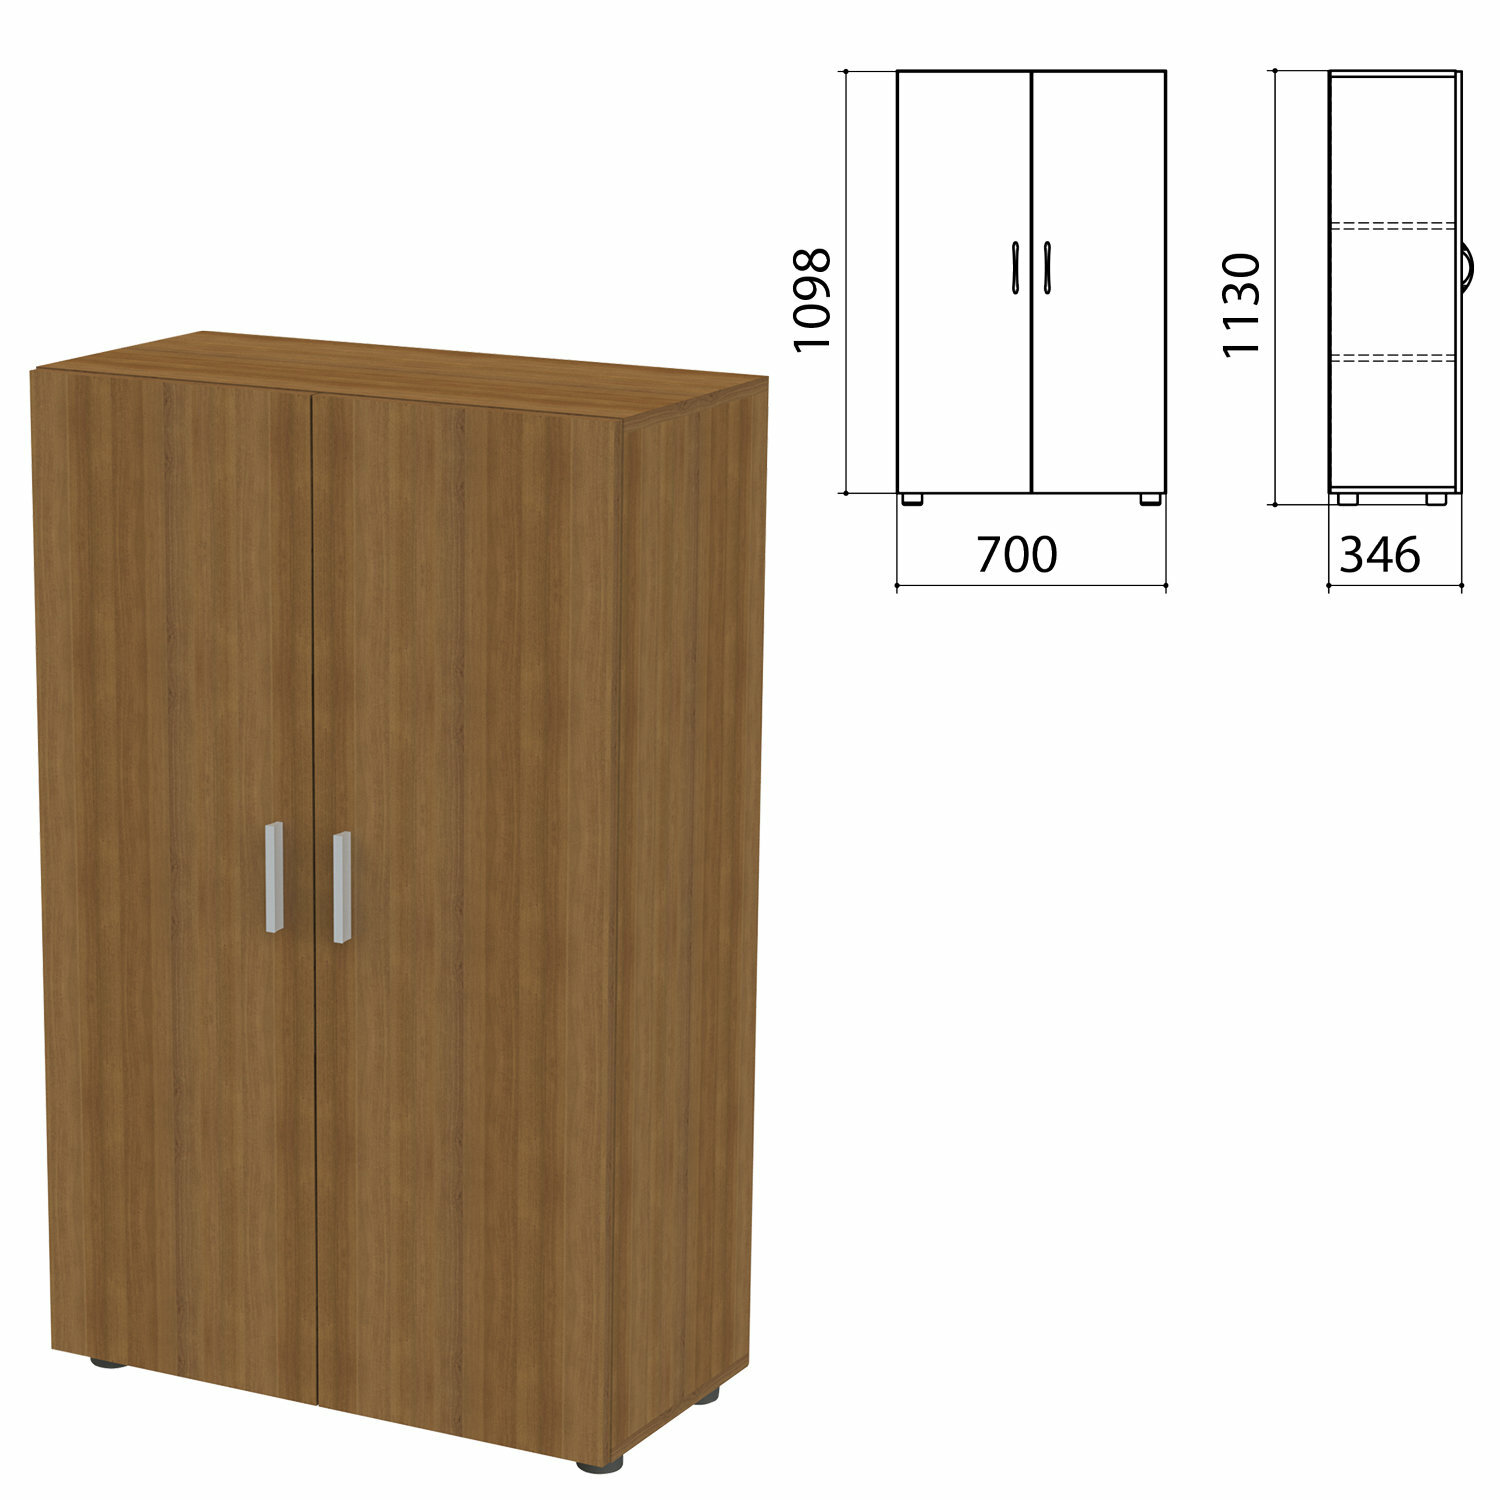 Шкаф закрытый «Канц», 700×350×1130 мм, цвет орех пирамидальный (комплект)